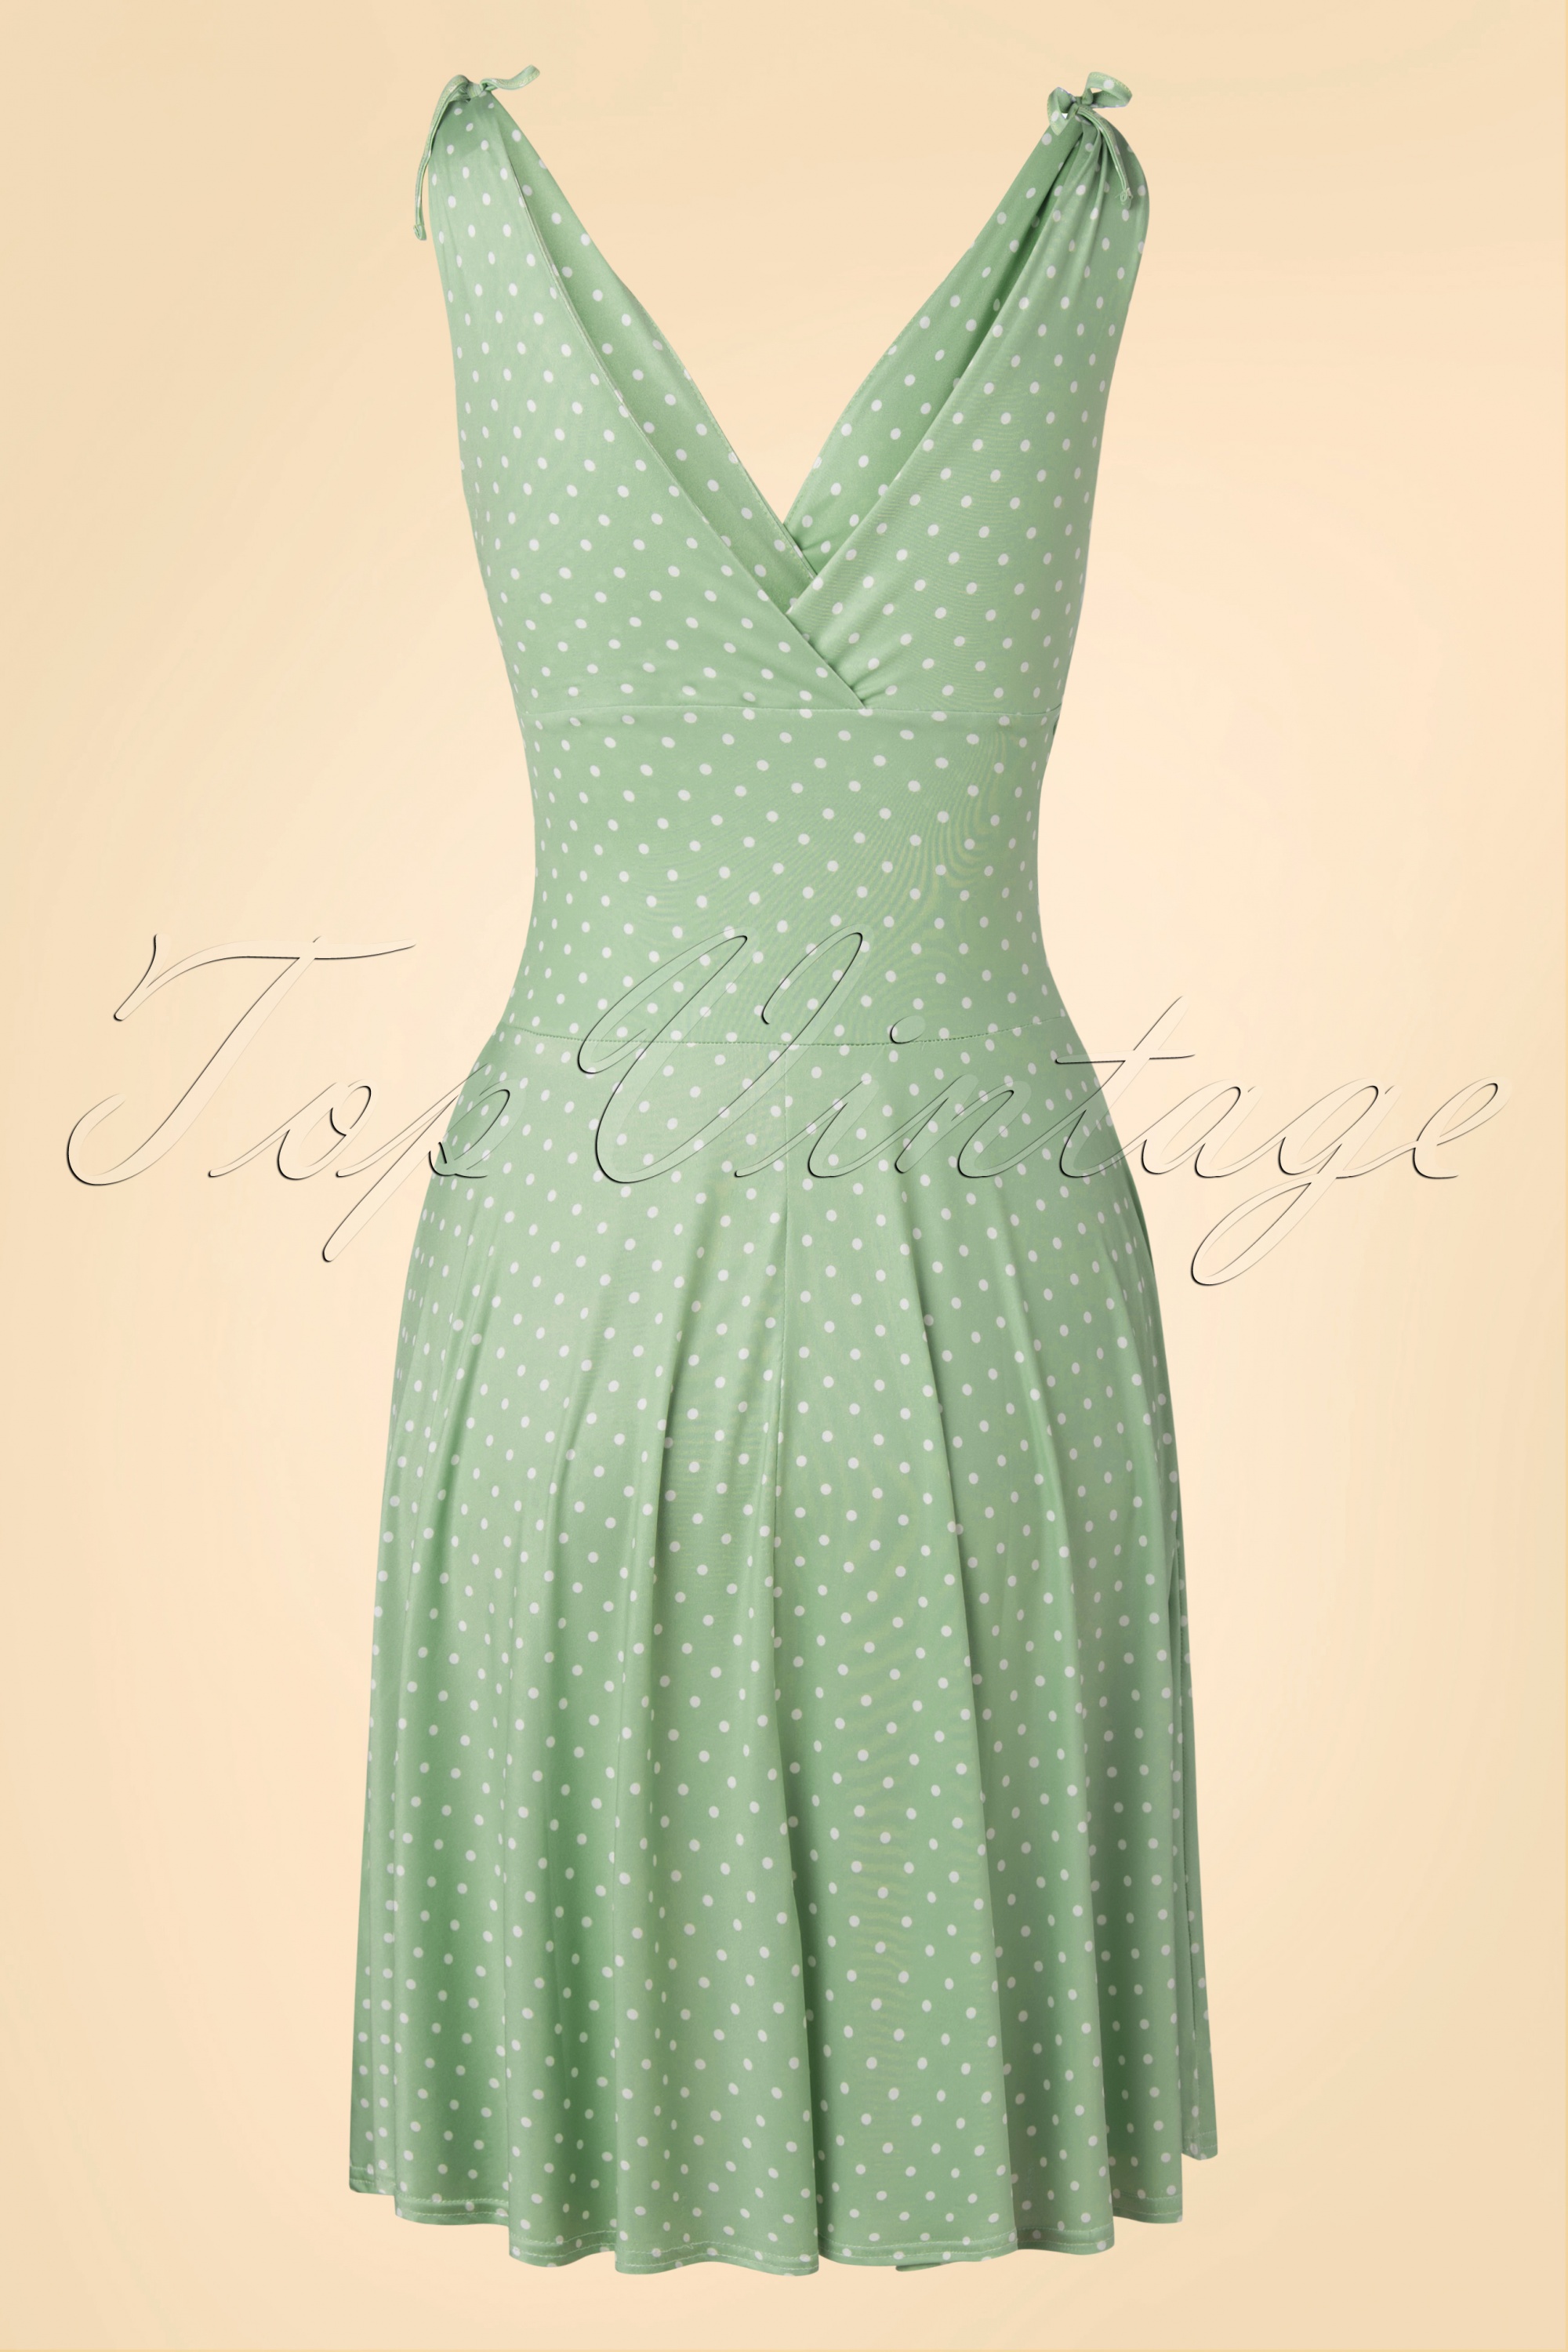 Vintage Chic for Topvintage - Verjaardagscollectie ~ Grecian Dots jurk in mint 2